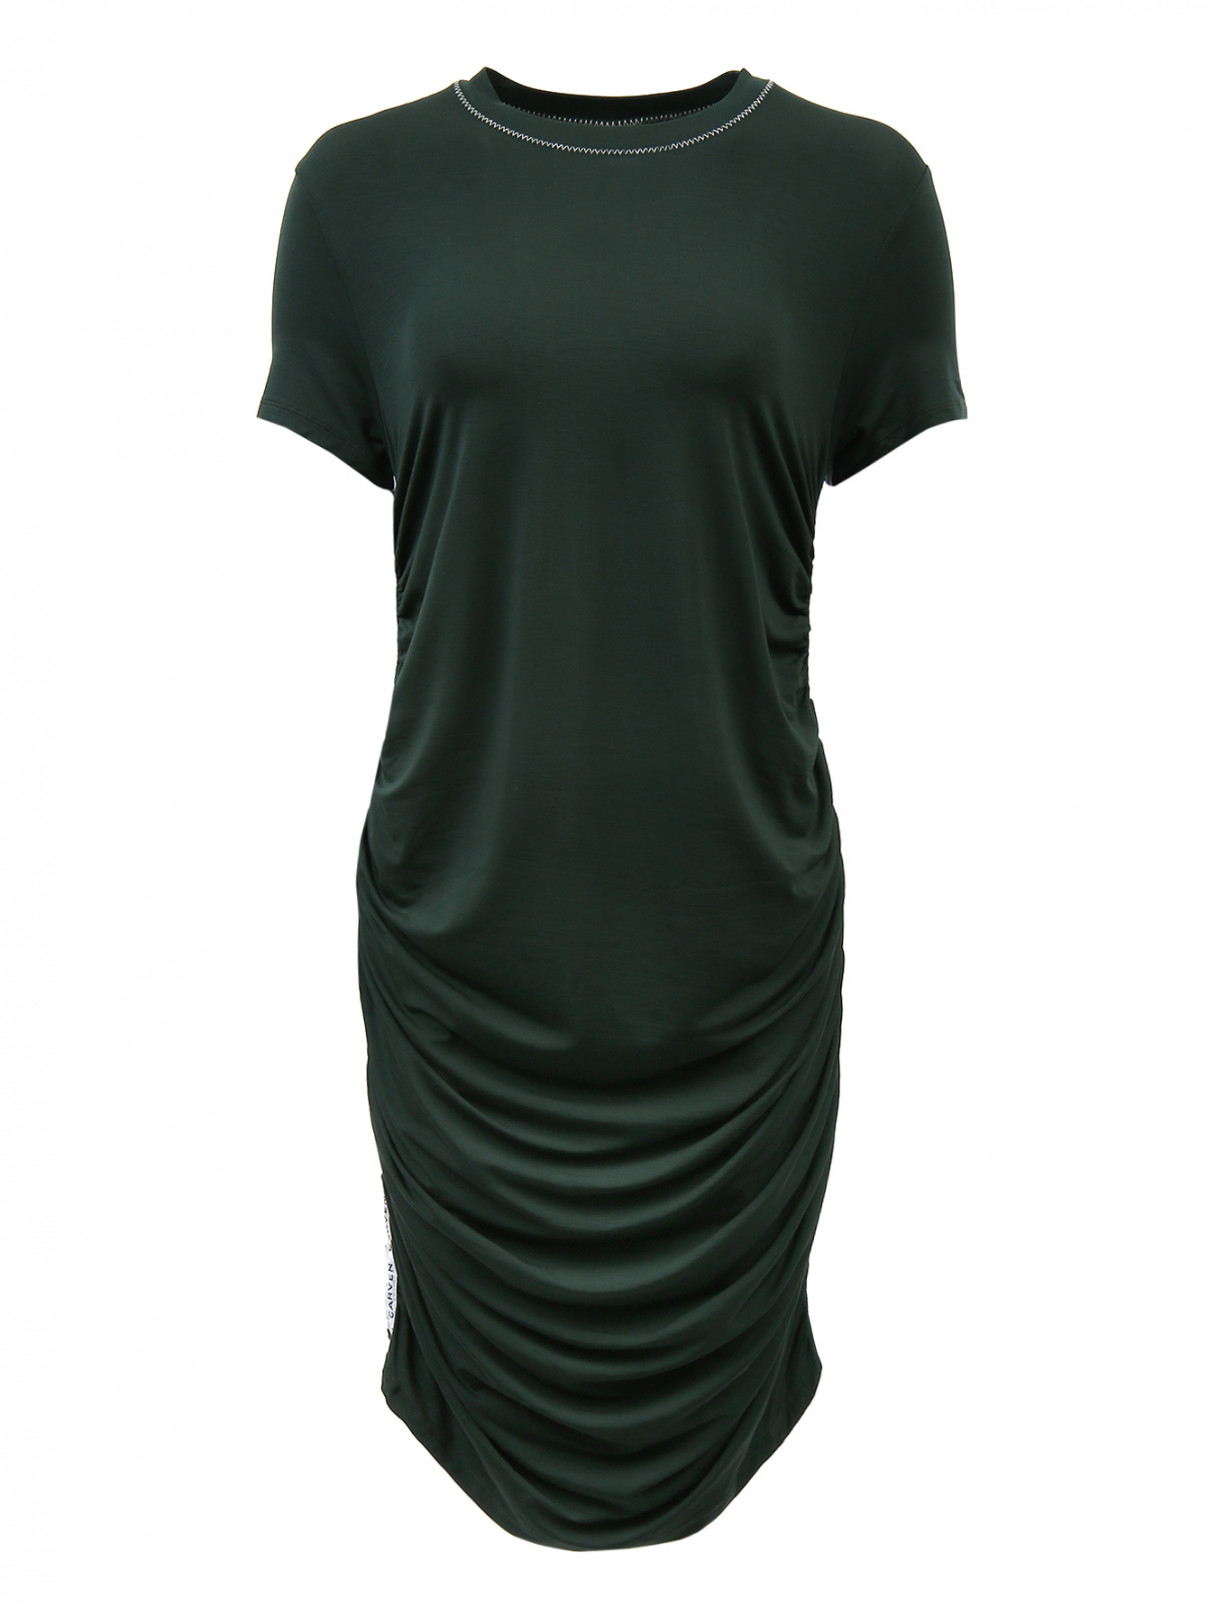 Платье с боковыми драпировками и круглым воротом Carven  –  Общий вид  – Цвет:  Зеленый